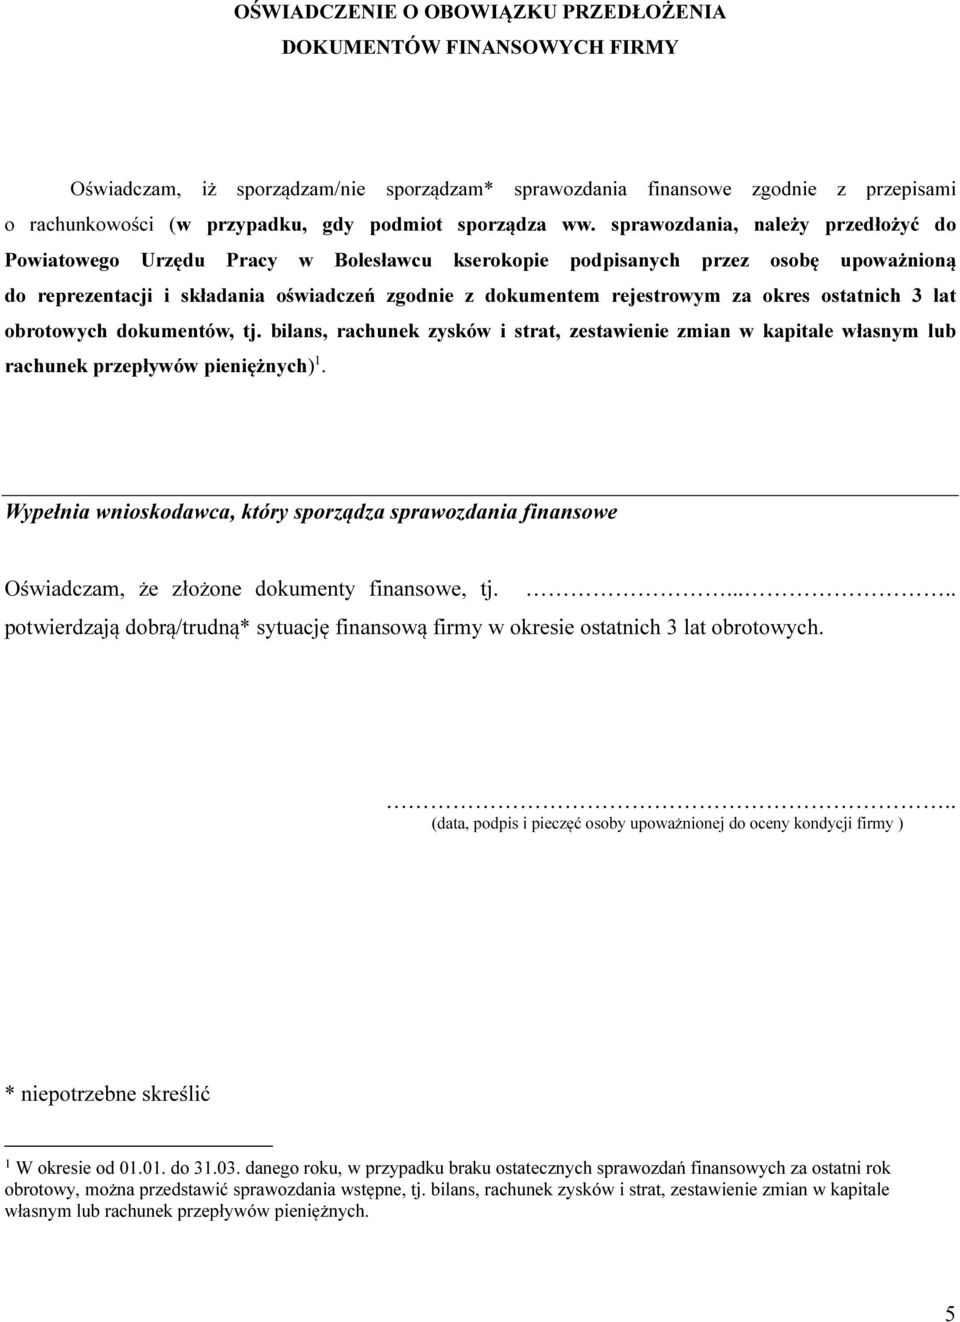 sprawozdania, należy przedłożyć do Powiatowego Urzędu Pracy w Bolesławcu kserokopie podpisanych przez osobę upoważnioną do reprezentacji i składania oświadczeń zgodnie z dokumentem rejestrowym za